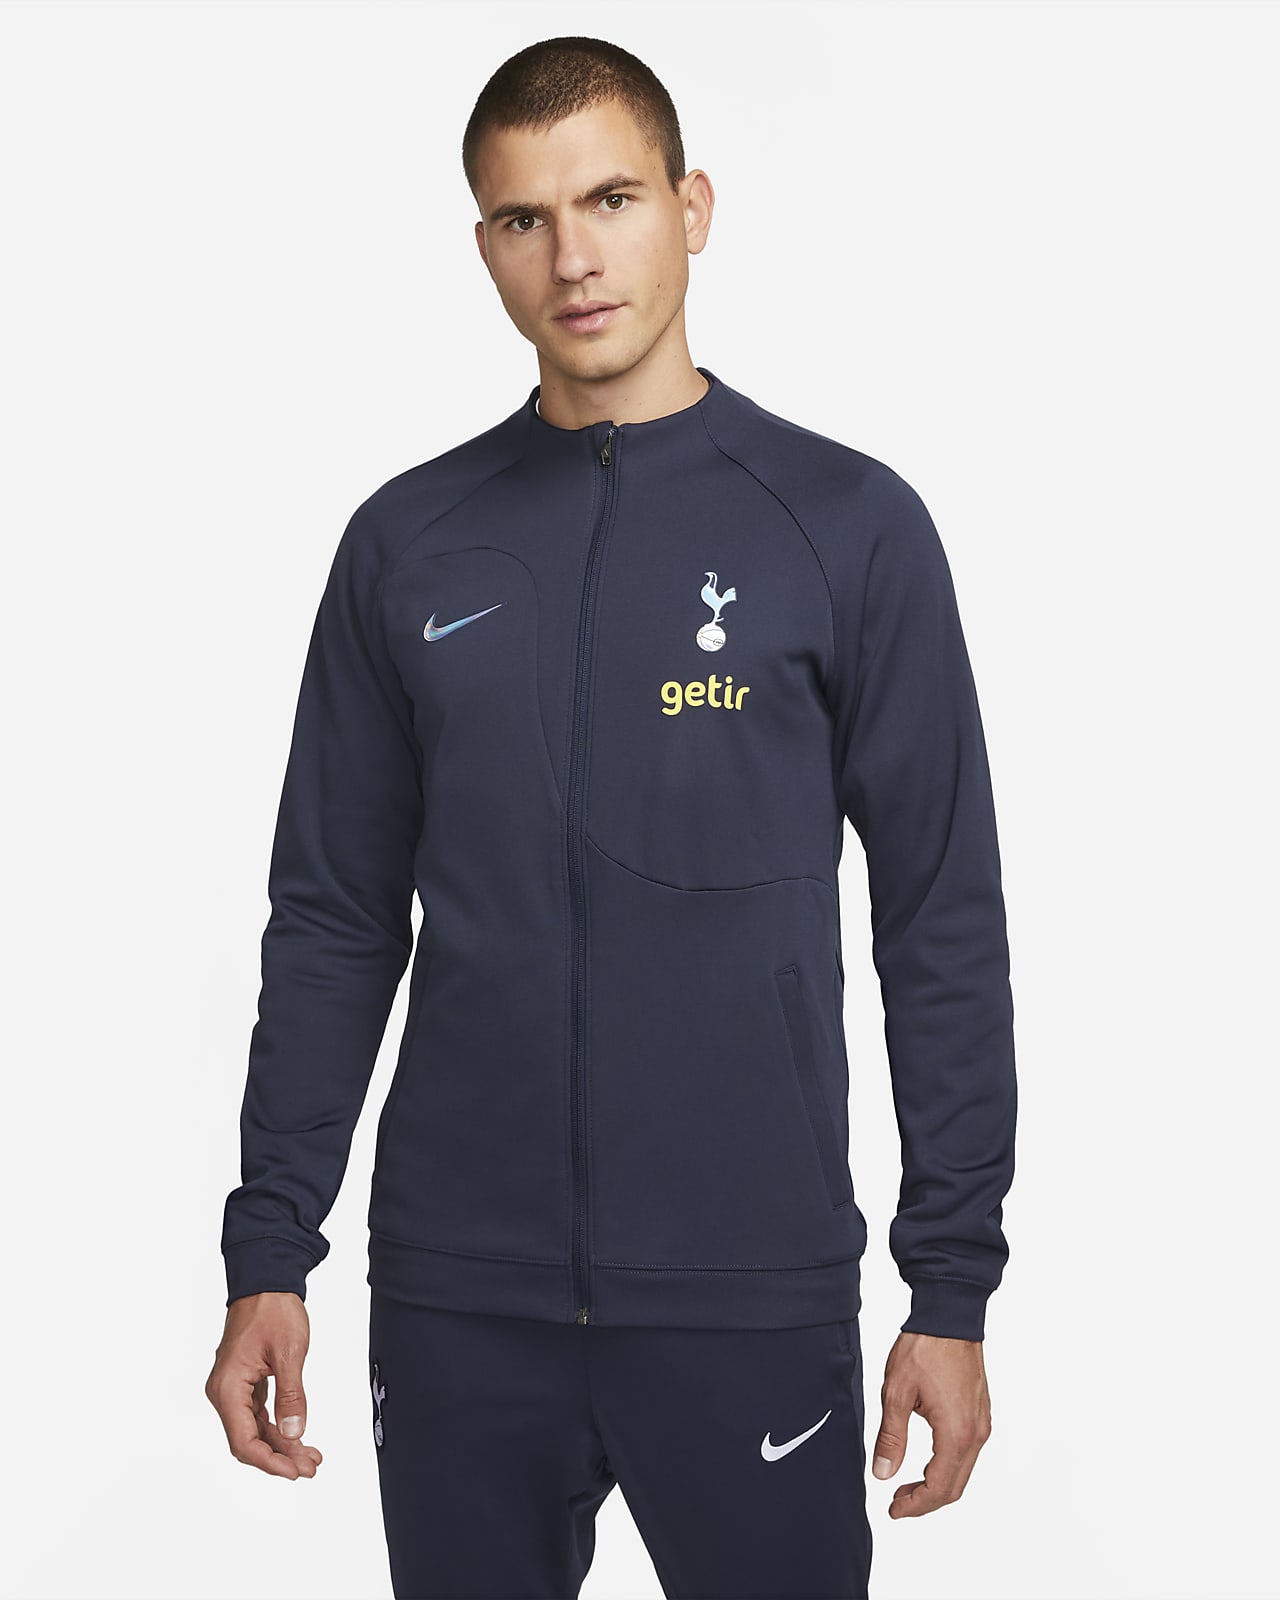 Pánská pletená fotbalová bunda Nike Tottenham Hotspur Academy Pro se zipem po celé délce